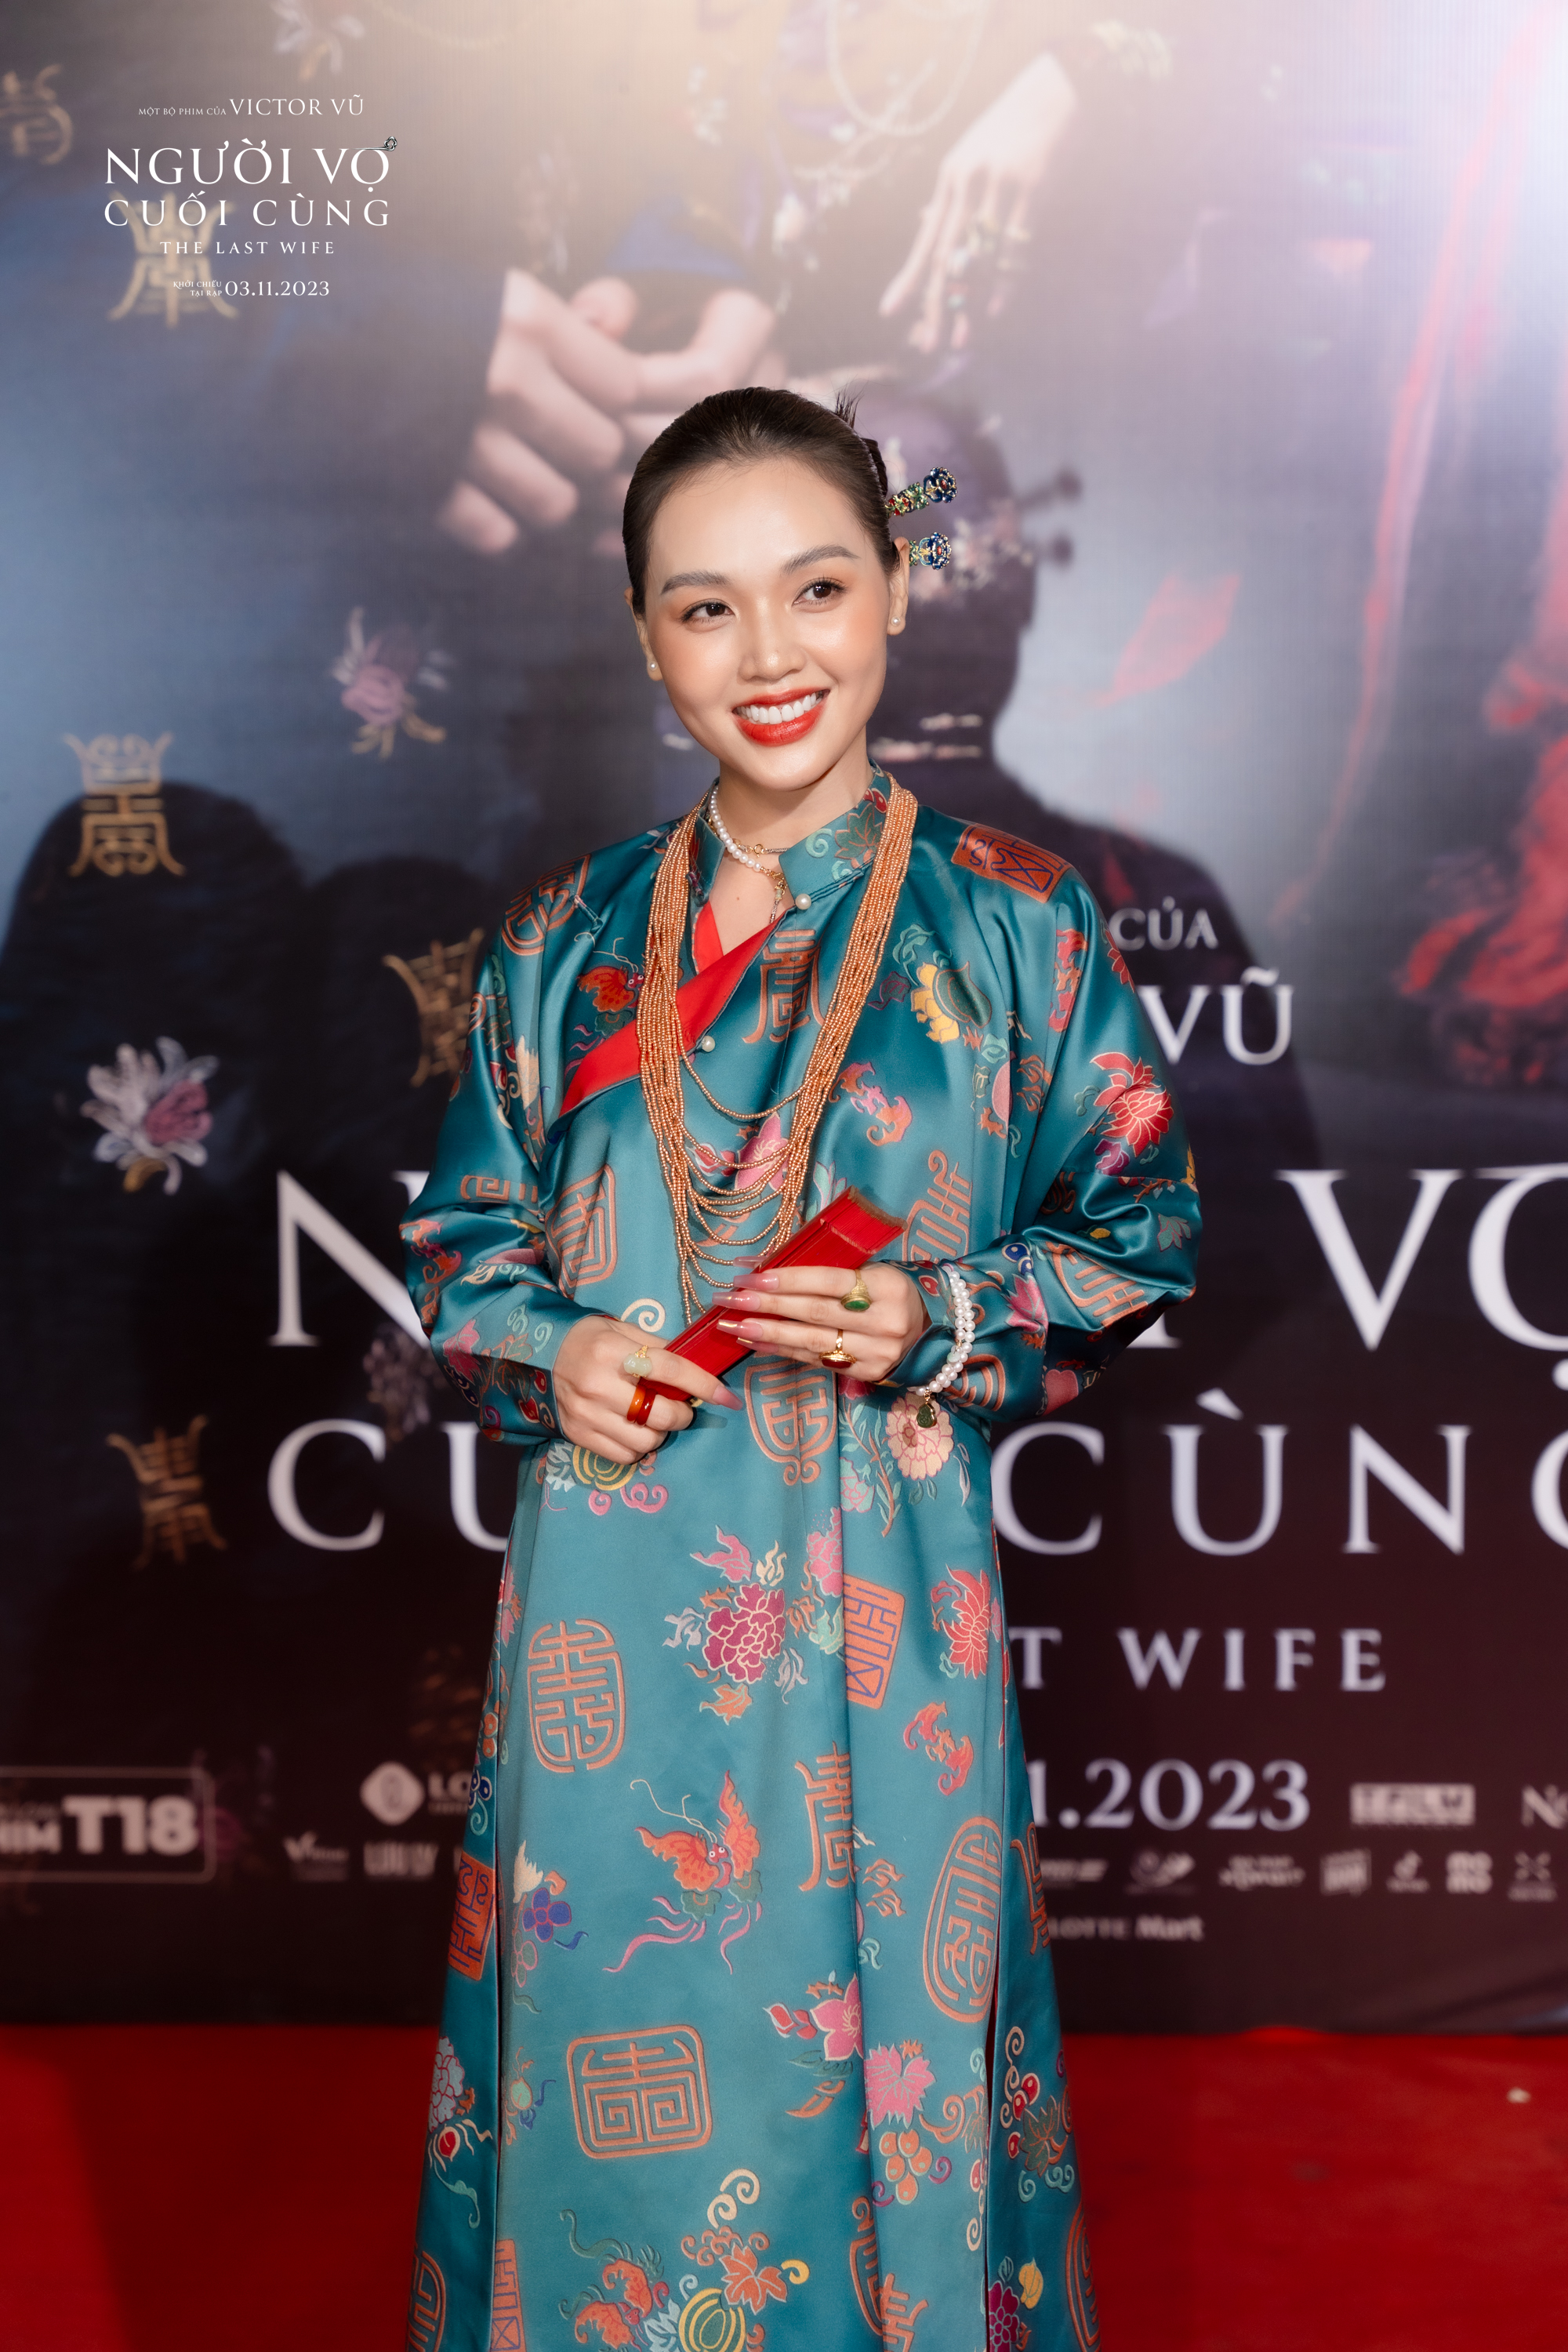 Showbiz Việt tề tựu chúc mừng phim mới của Victor Vũ - Ảnh 12.